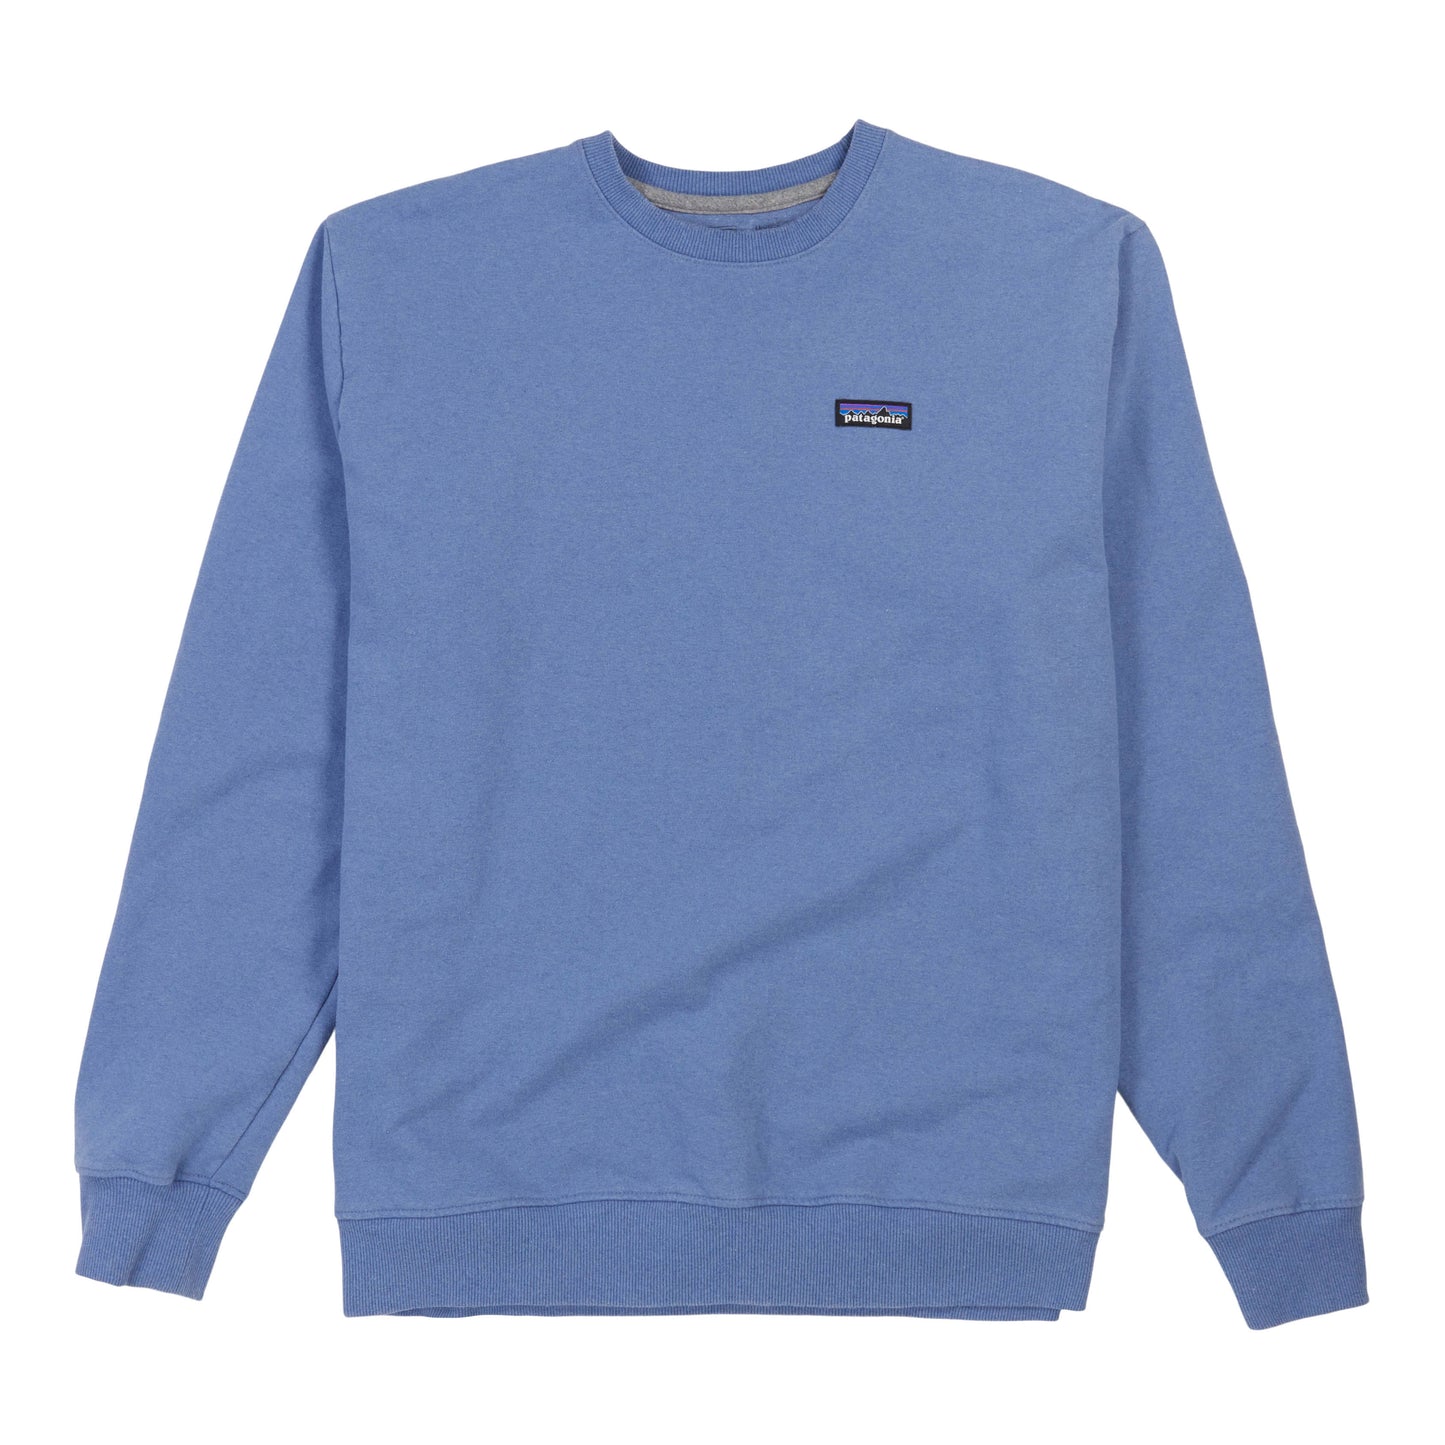 Men's P-6 Label Uprisal Crew Sweatshirt